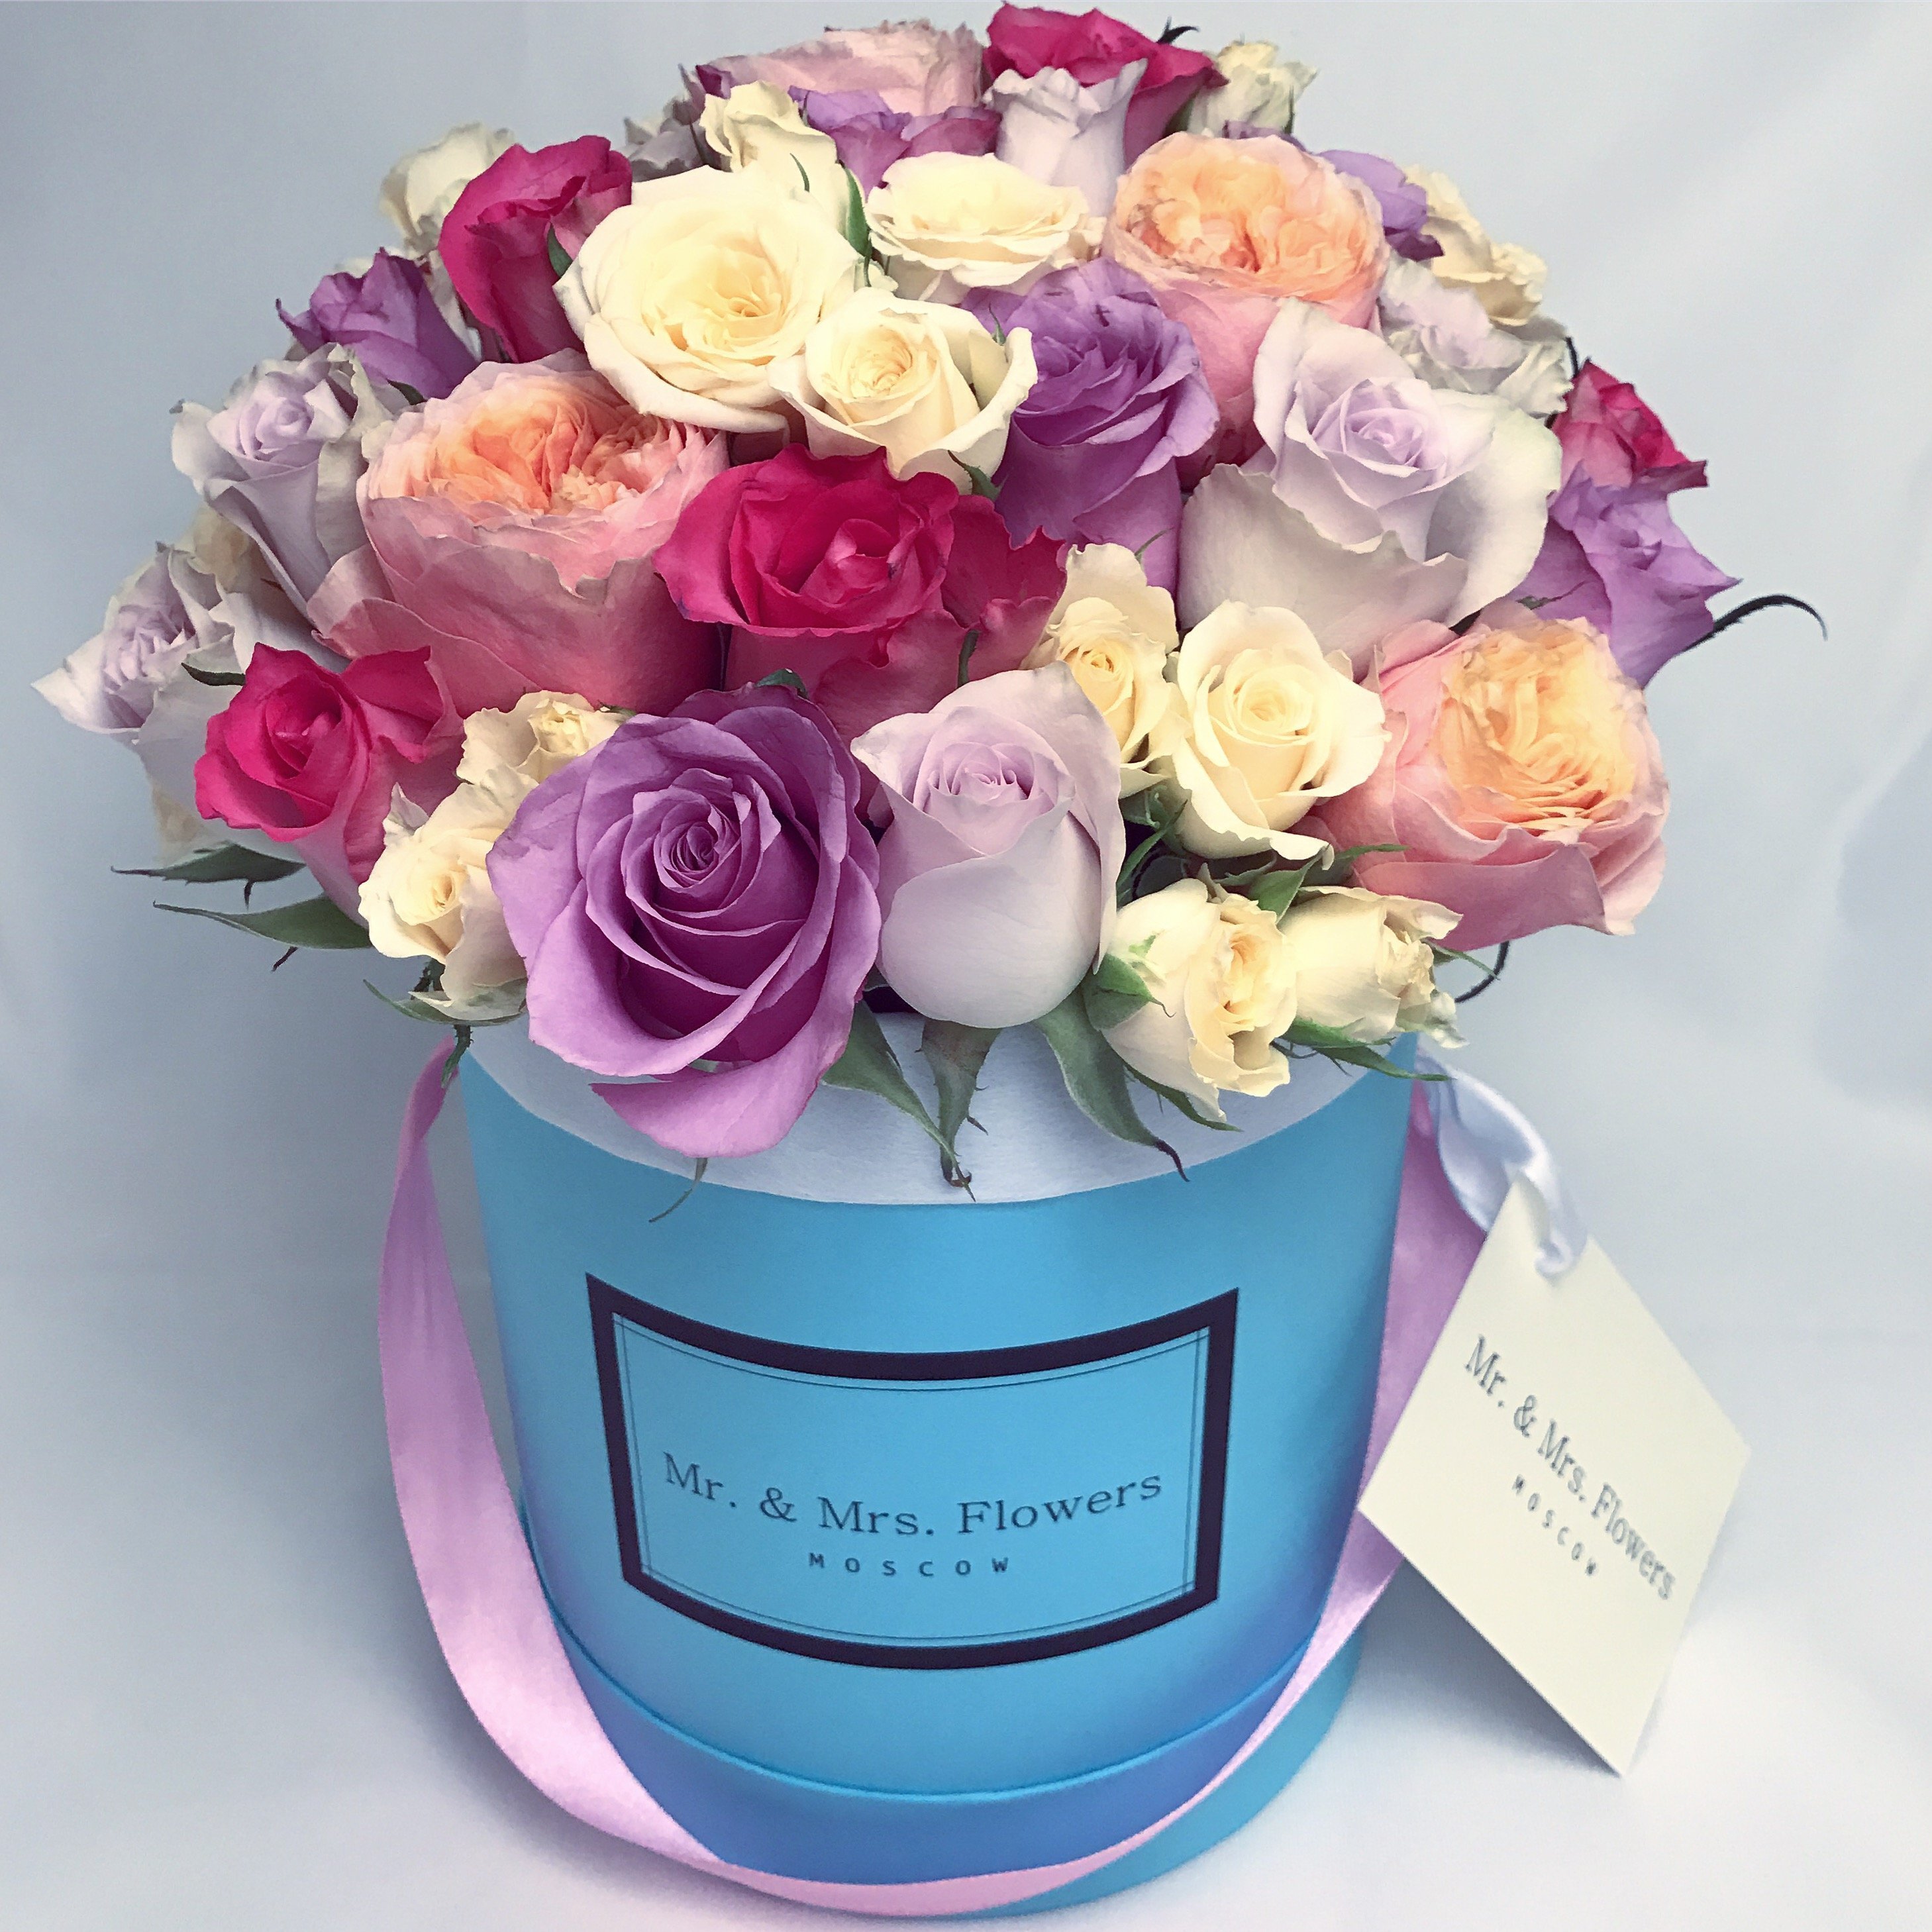 С днем рождения женщине цветы в коробке. Цветы в коробке. Красивый букет в коробке. Букет в круглой коробке. Модный букет в коробке.